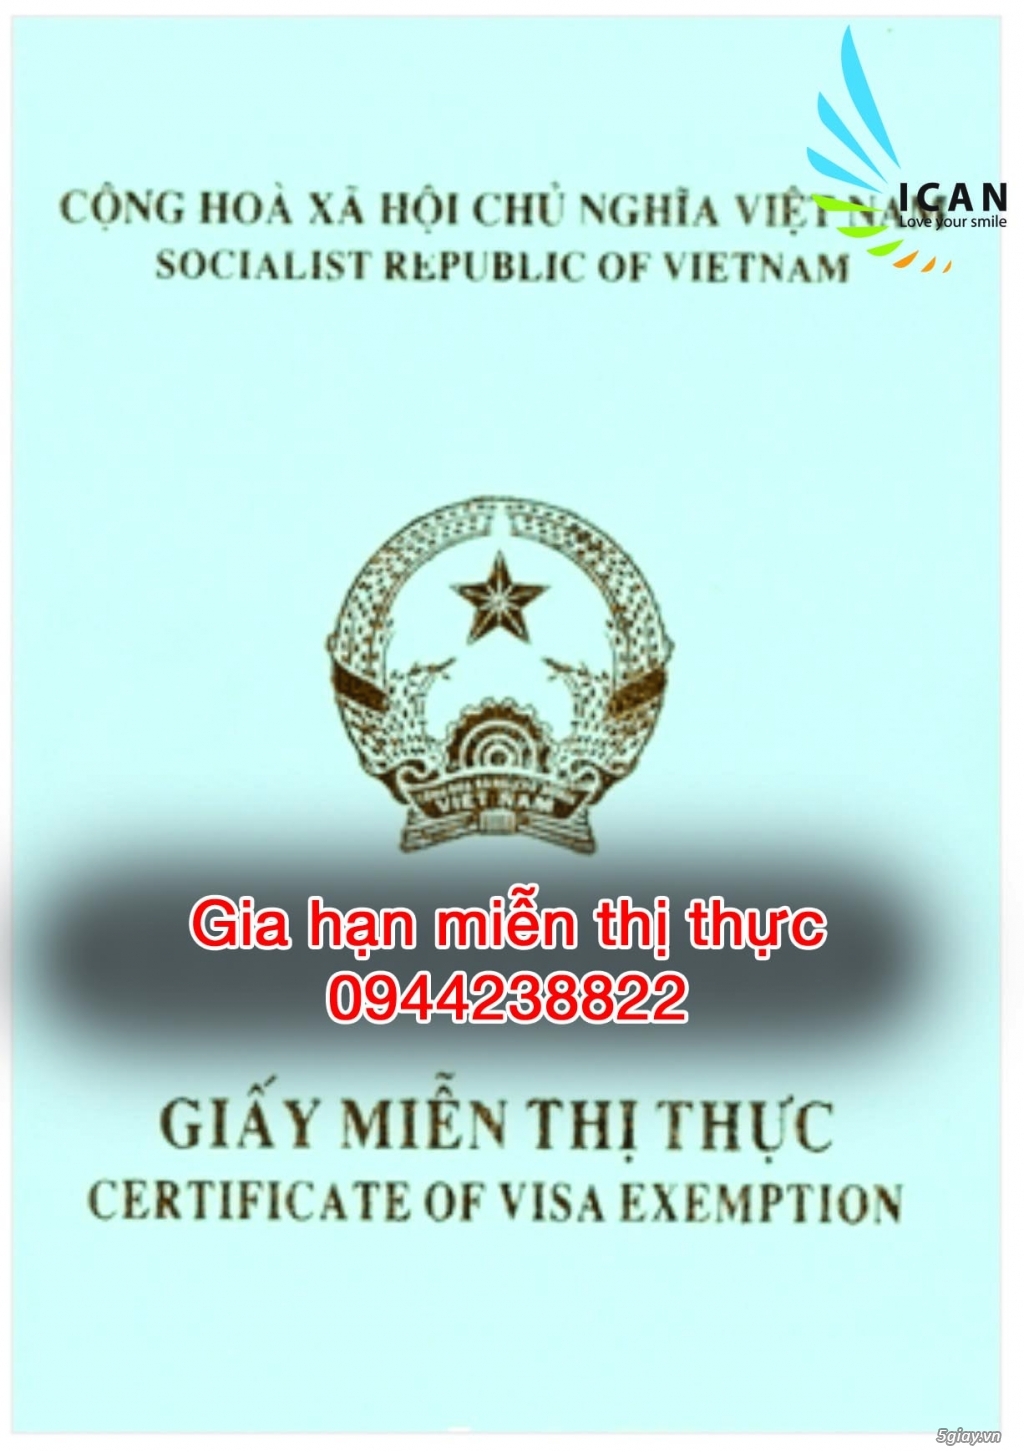 Gia hạn visa việt nam tại TPHCM-Quận Tân Bình - 4